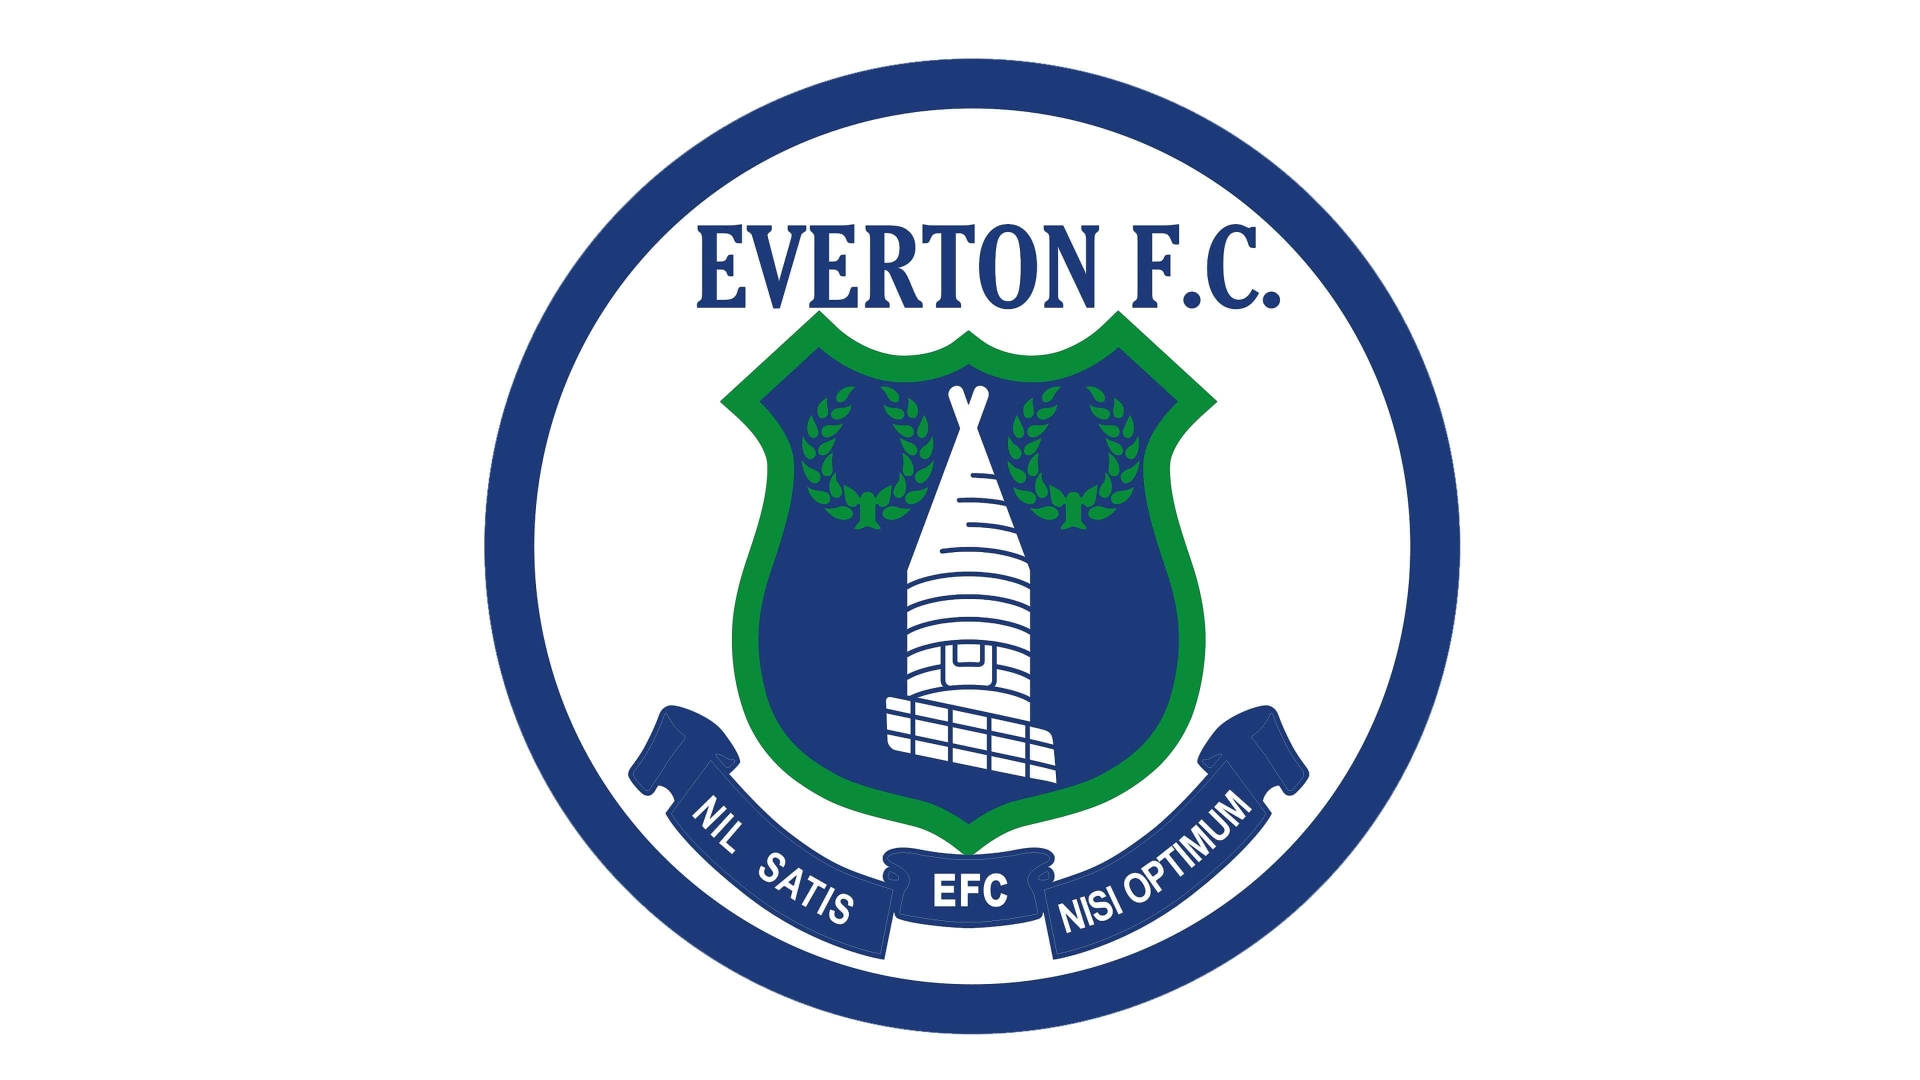 1978 Everton F.C. Emblem på en mørk blå baggrund Wallpaper